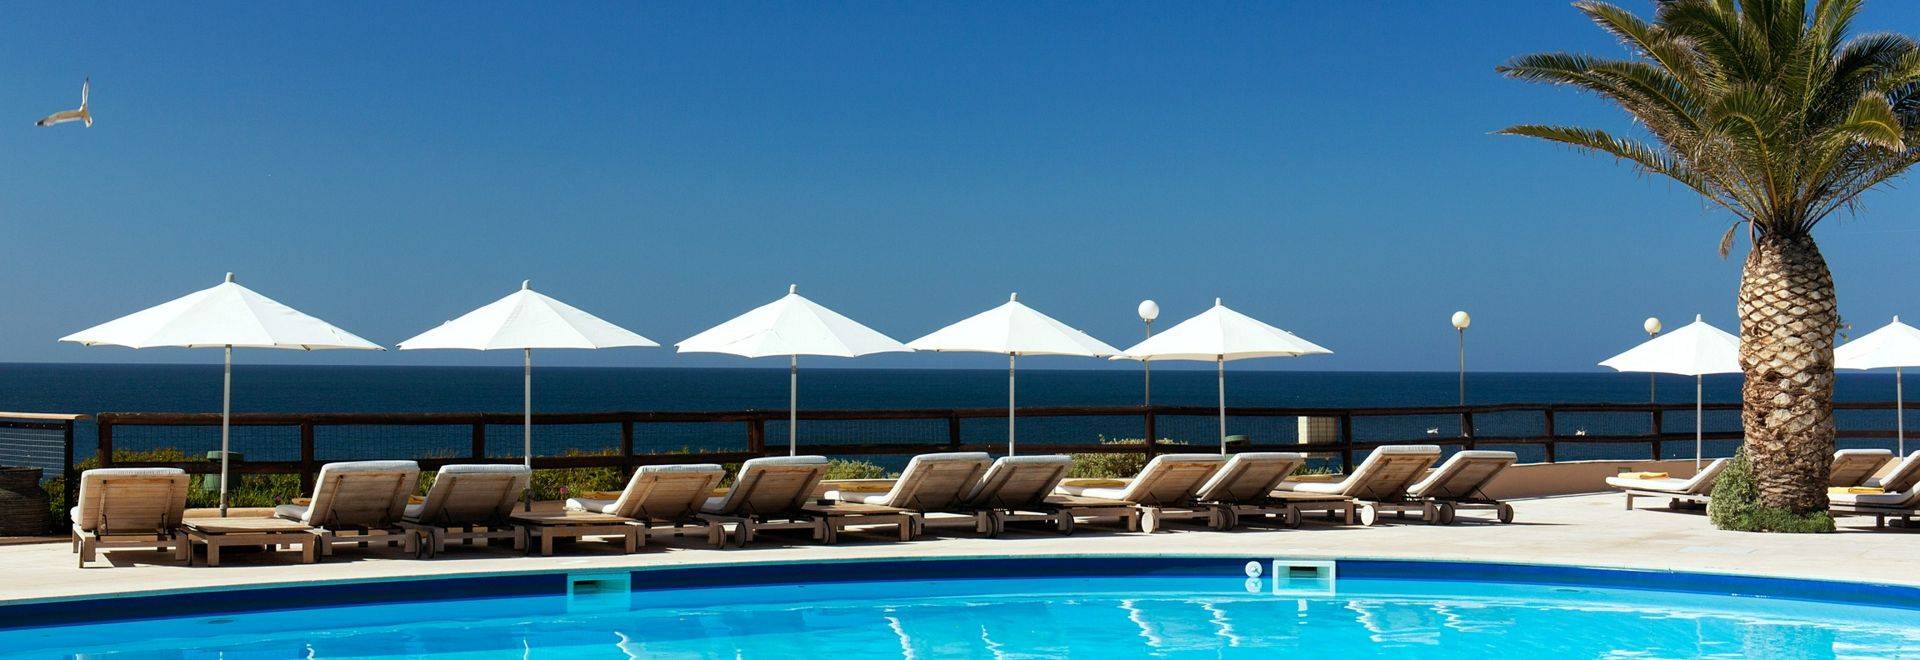 Vilalara-Thalassa-Resort-outdoor-pool.jpg